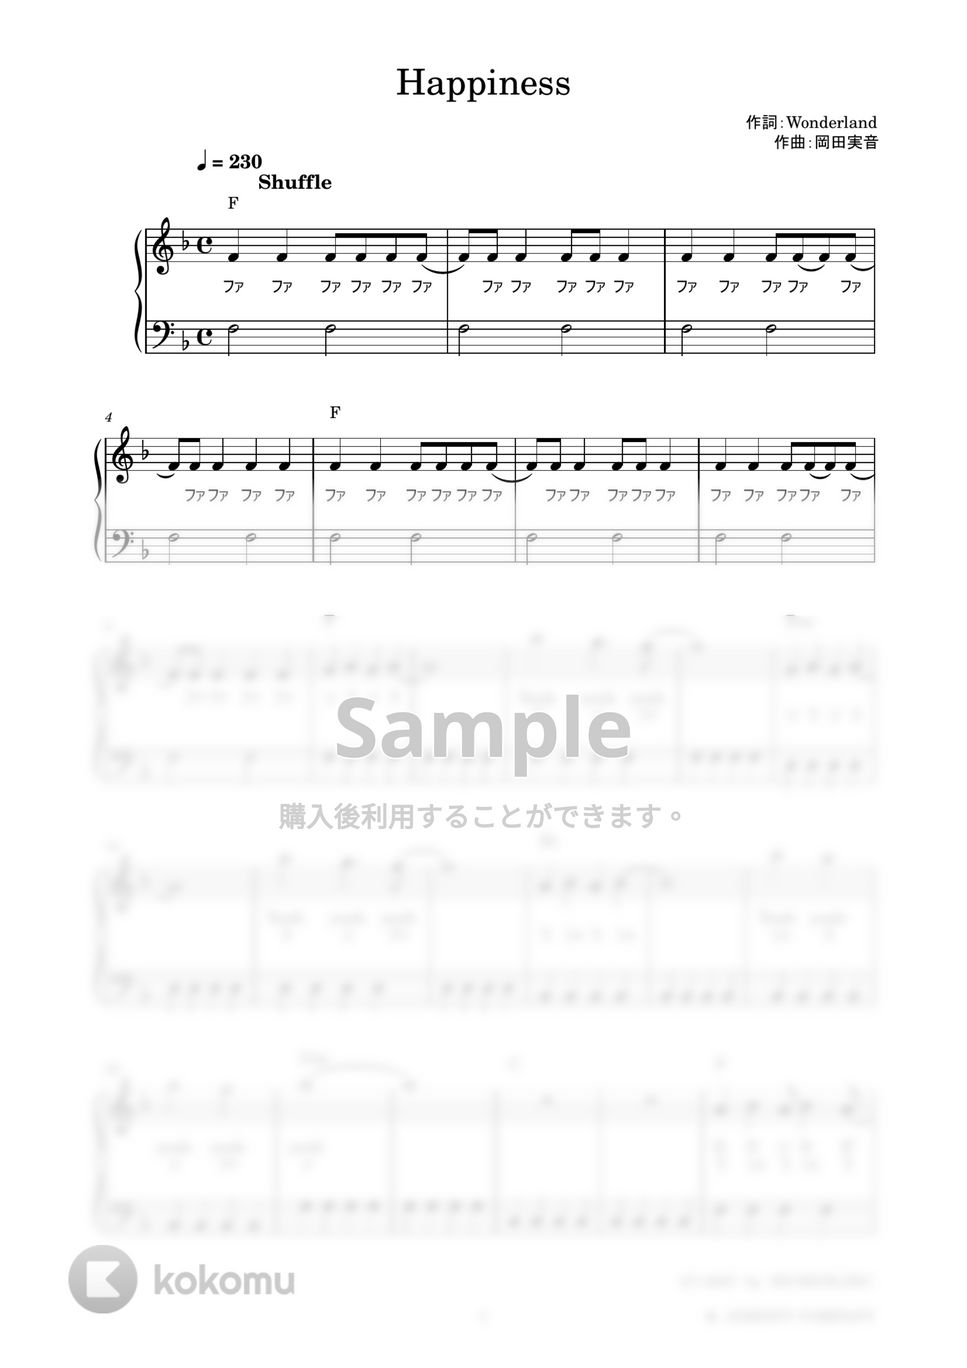 嵐 - Happiness (かんたん / 歌詞付き / ドレミ付き / 初心者) by piano.tokyo